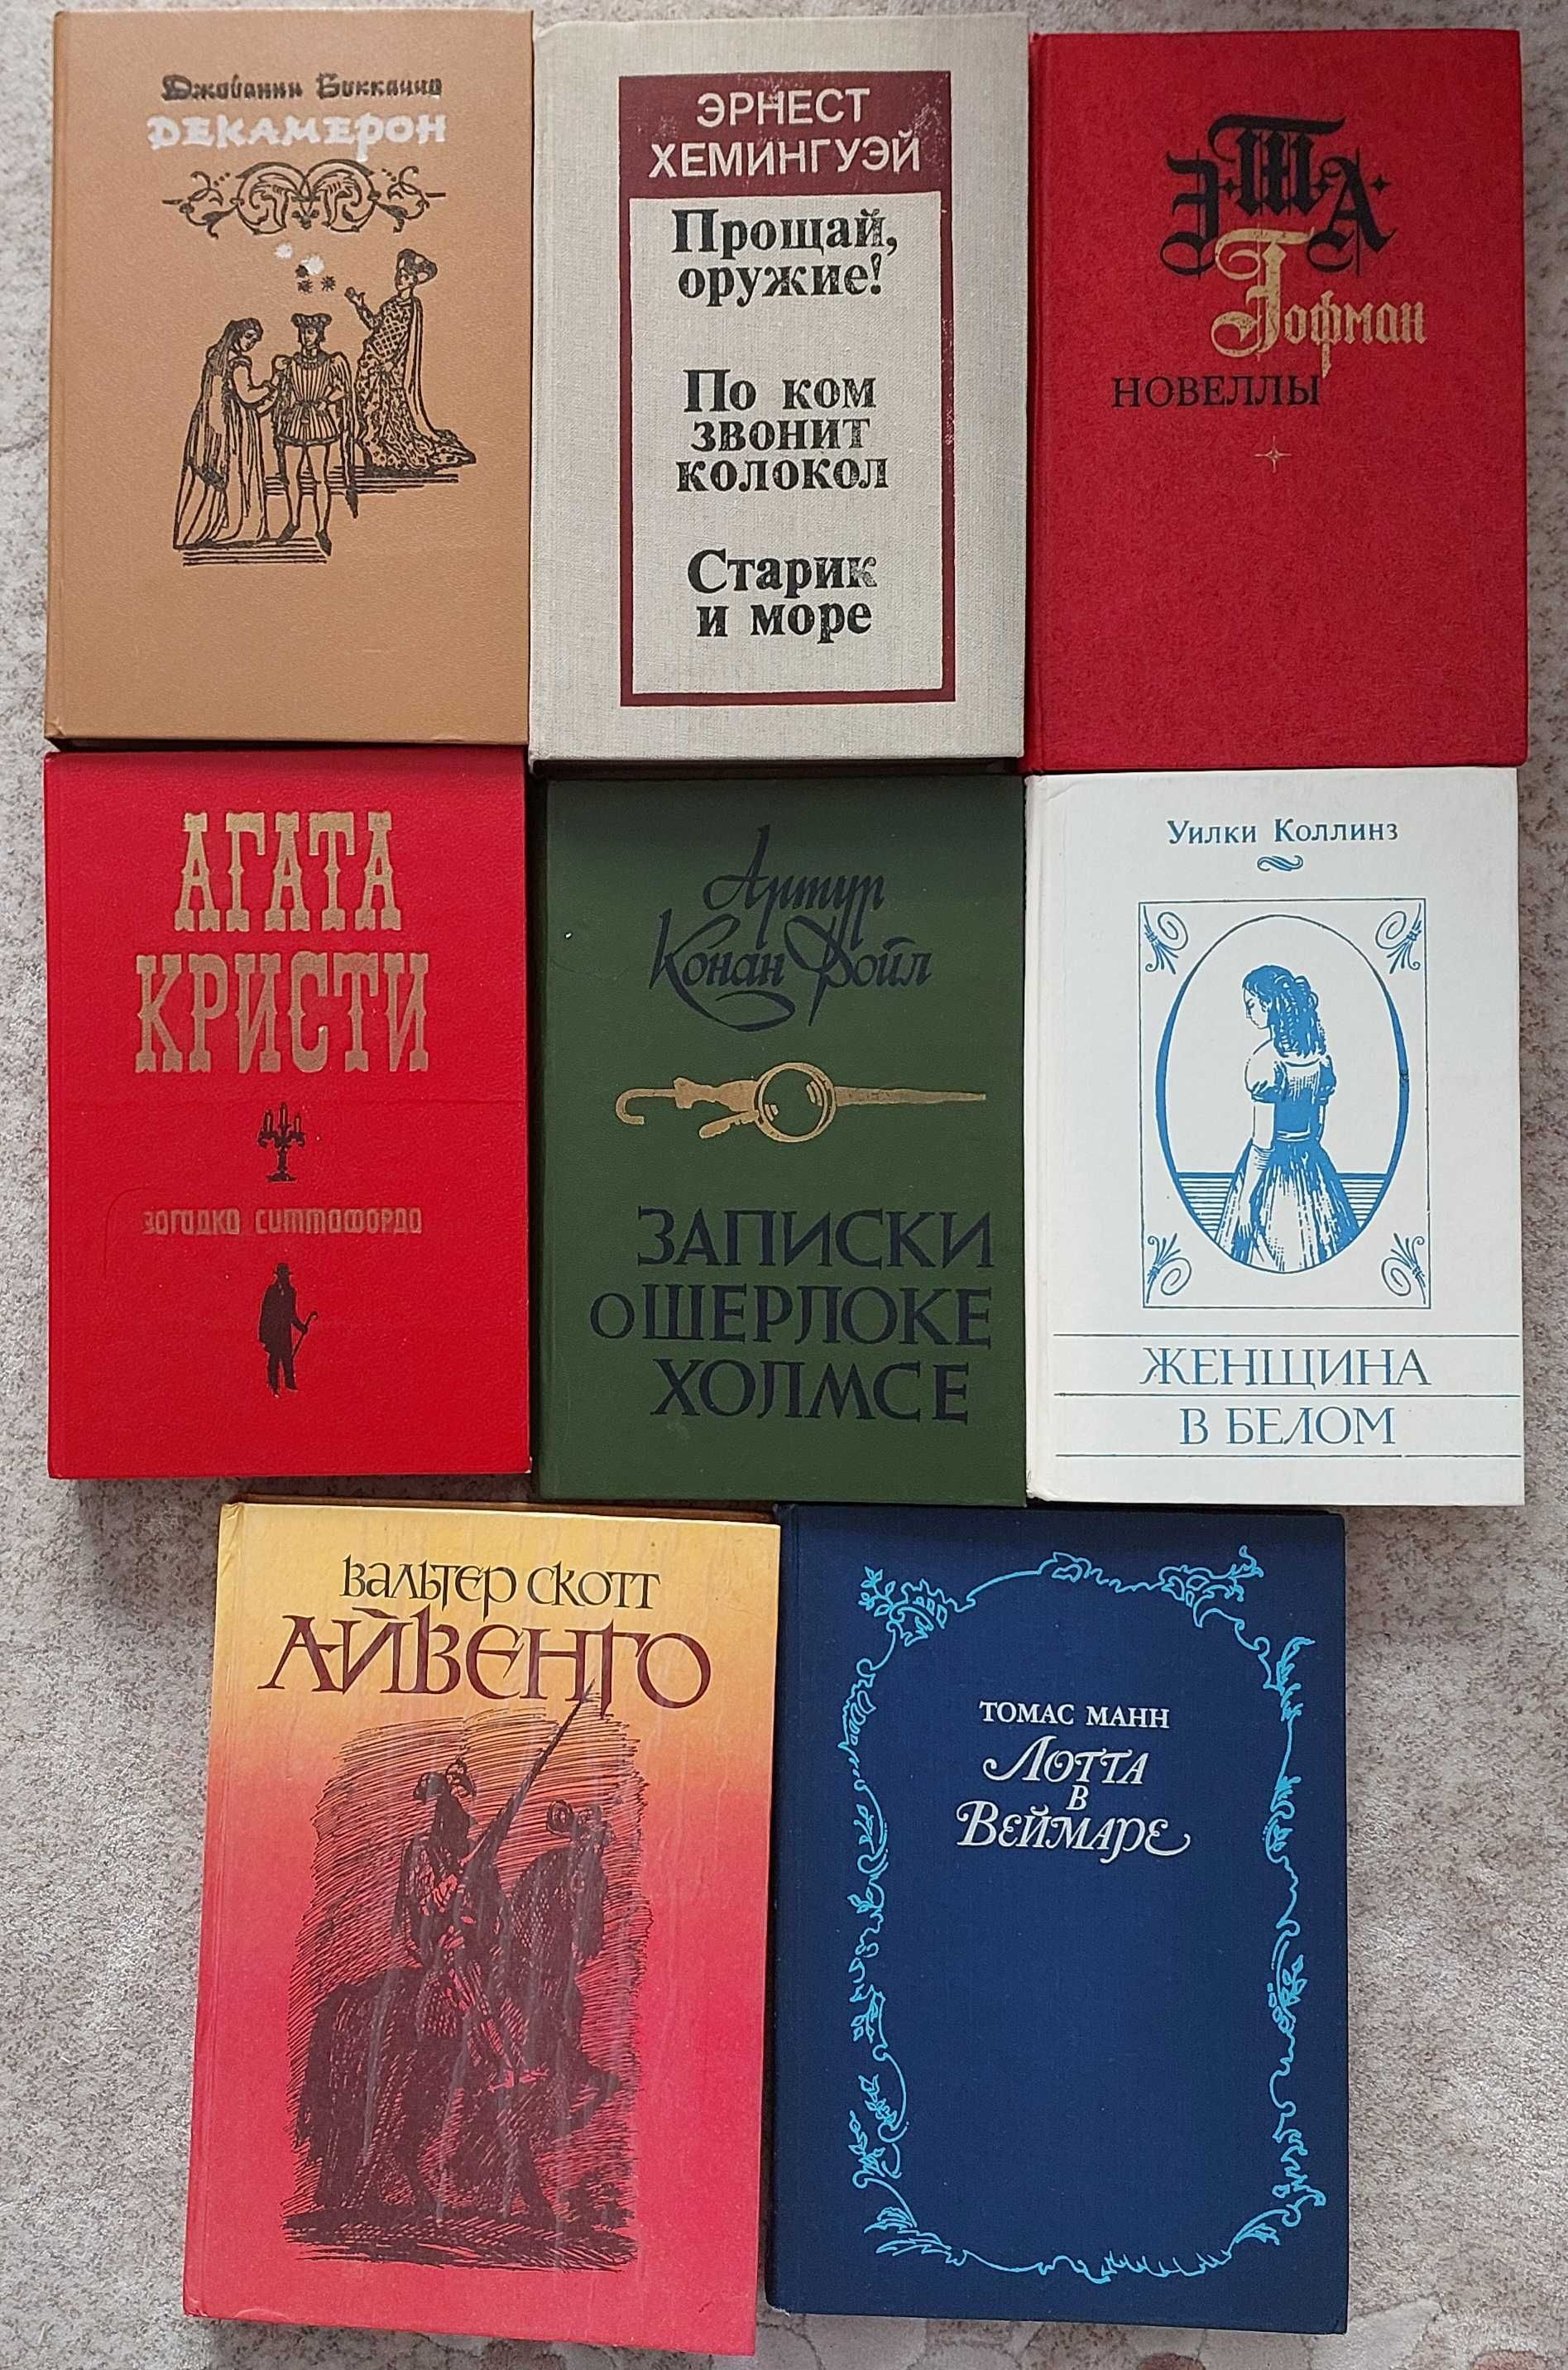 Продам художественные книги русских и зарубежных писателей